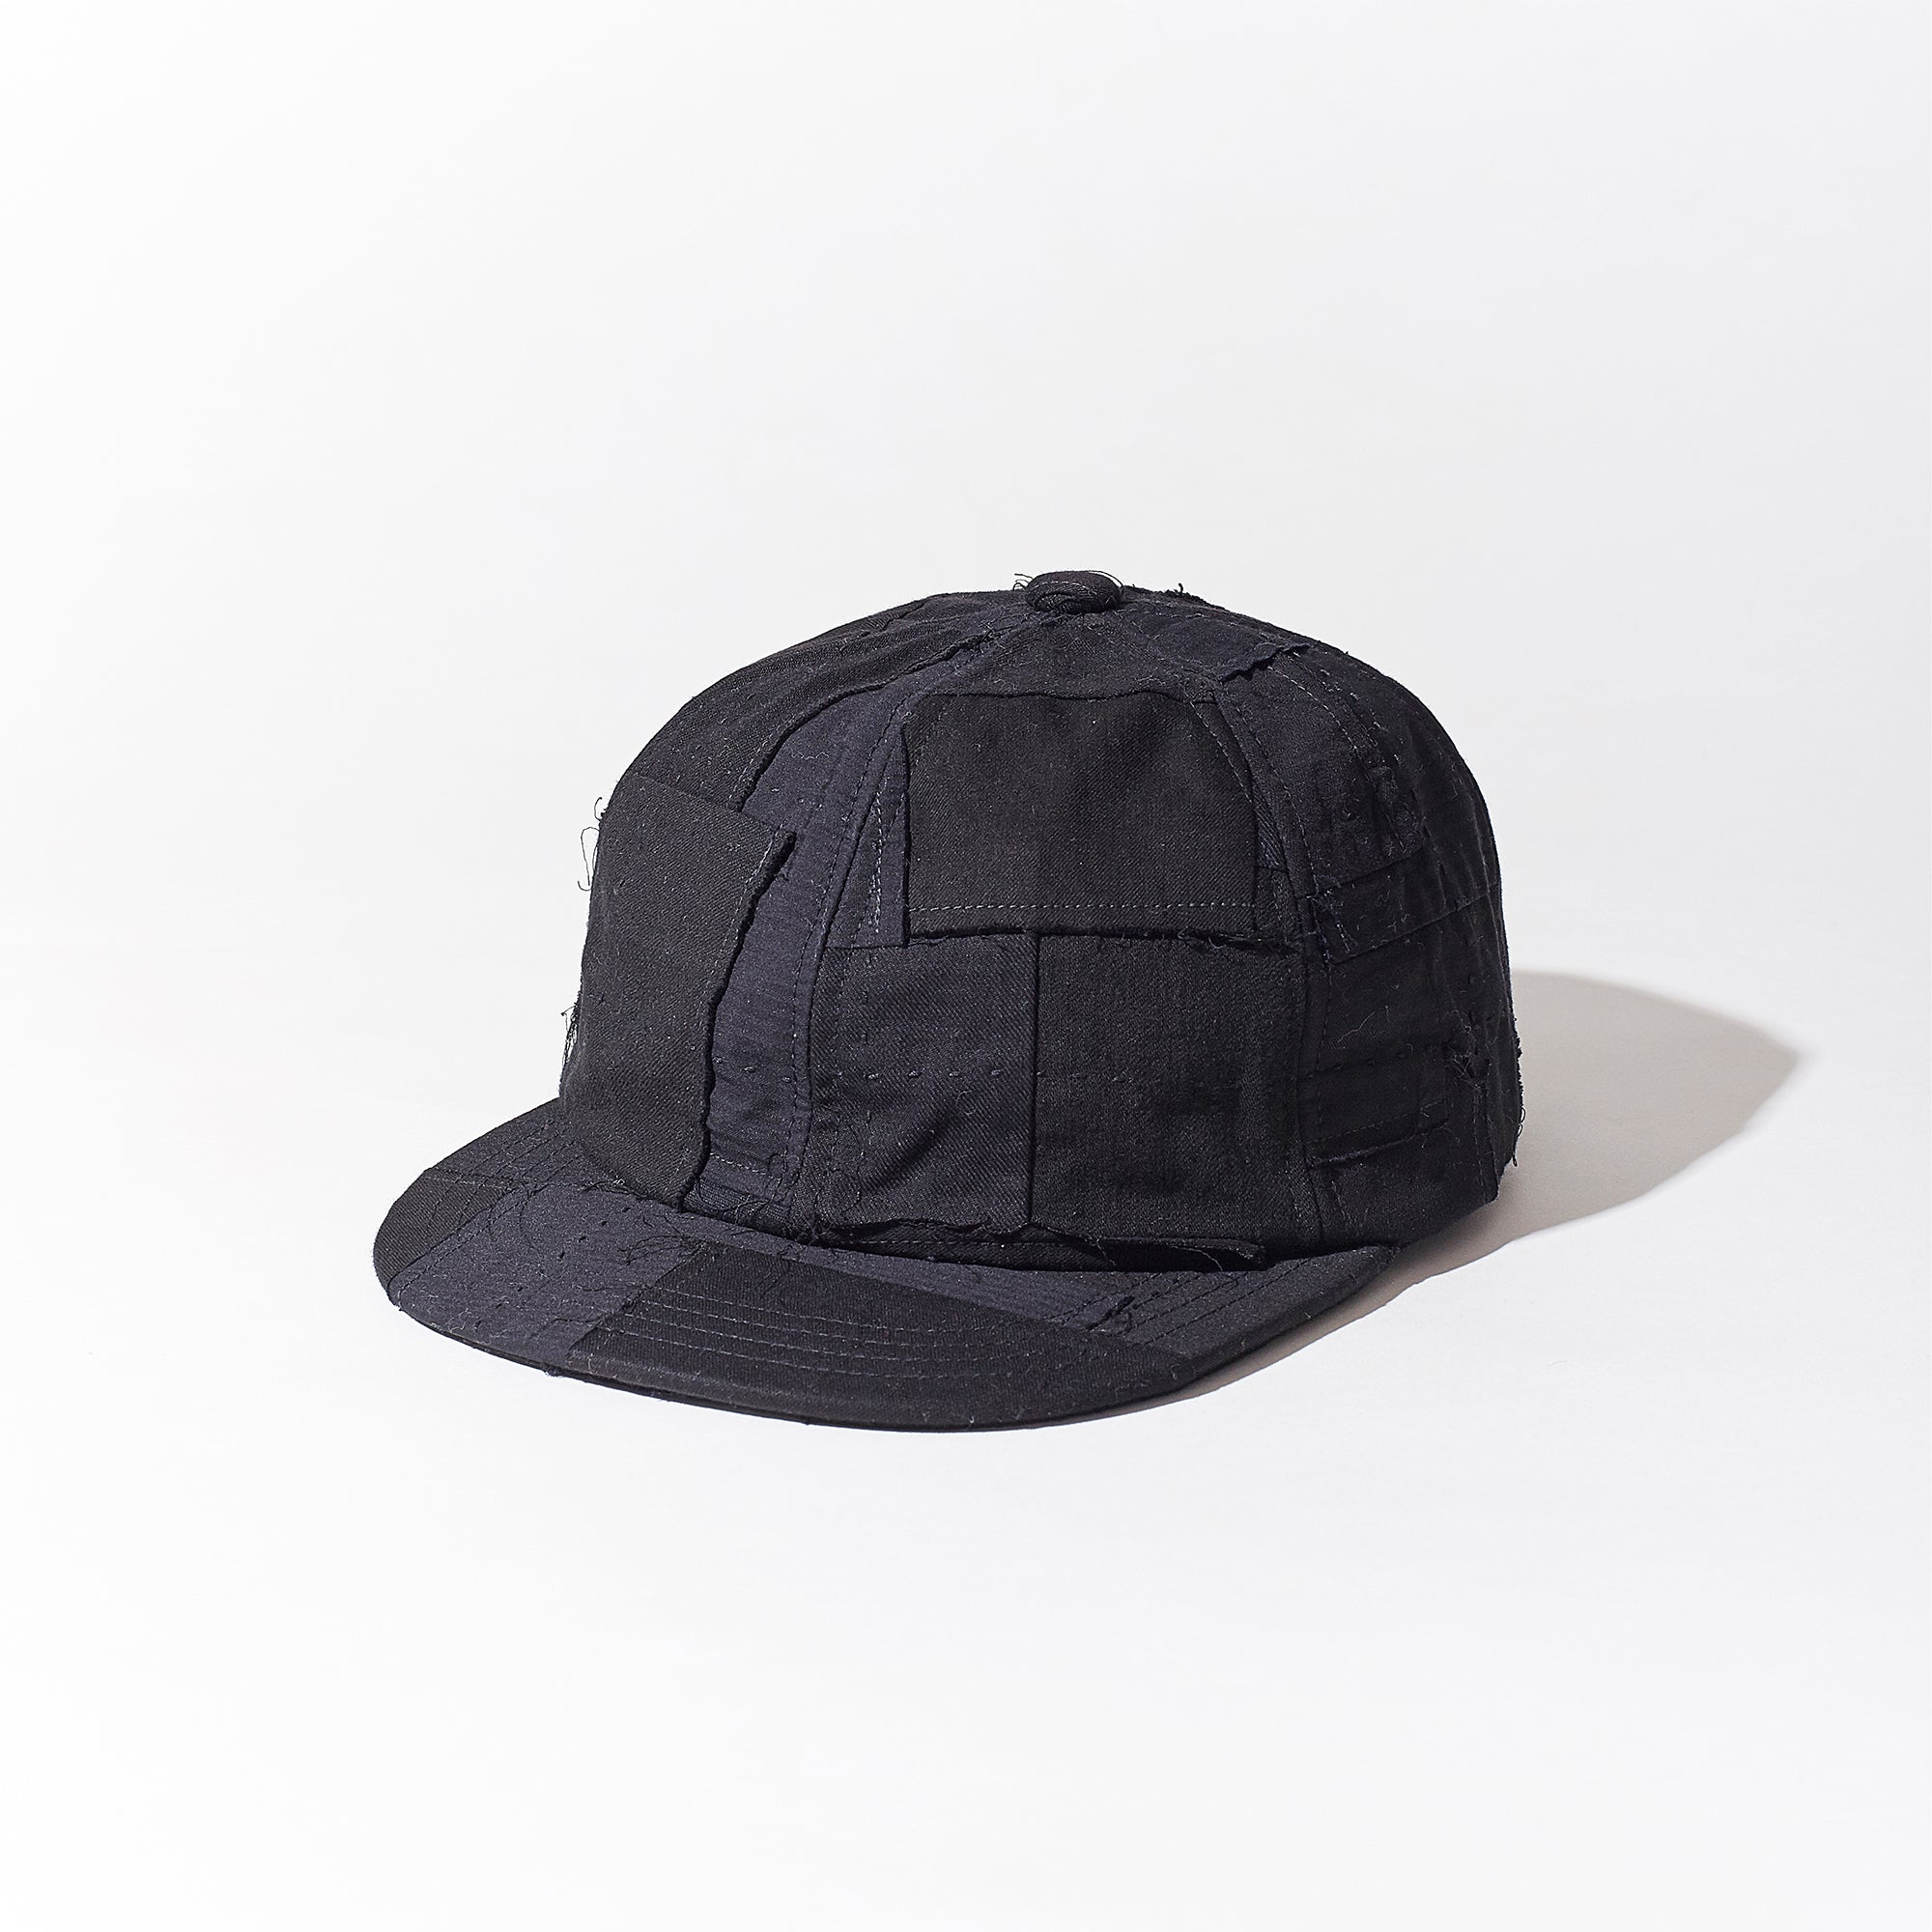 職人の賄い帽子 フォーパネルキャップ 黒×黒 TypeS ロングビルキャップ 